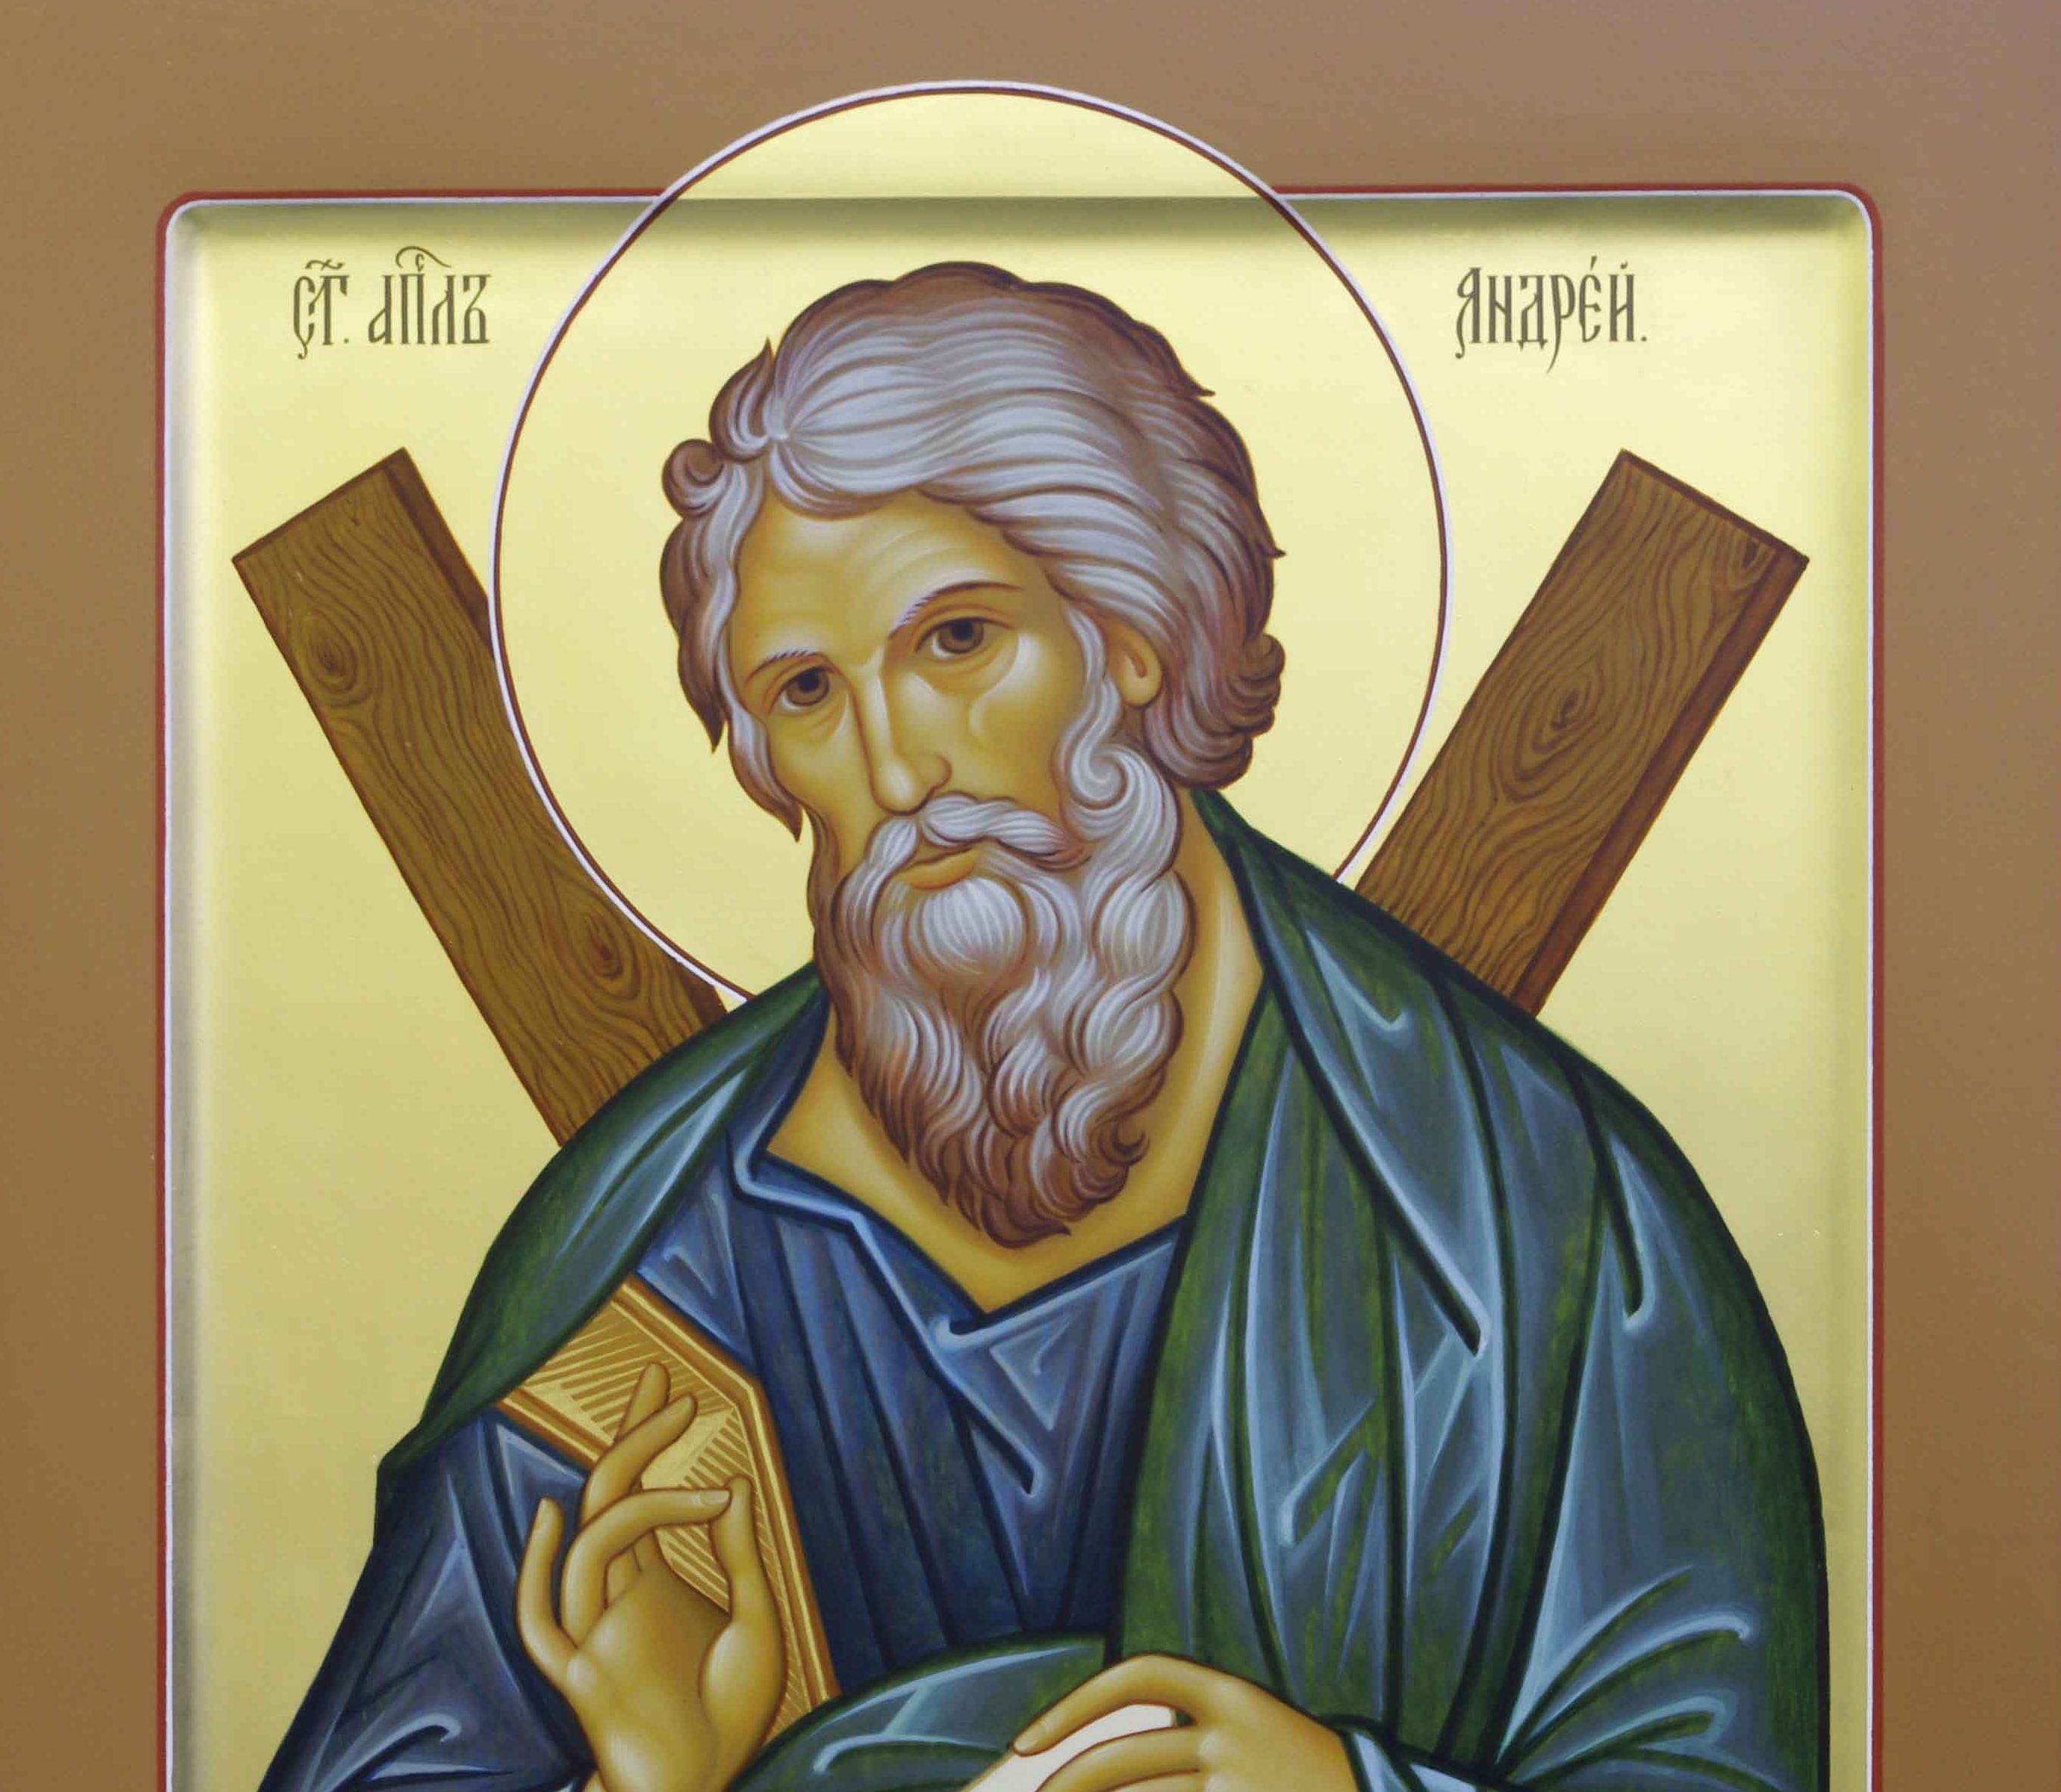 Икона апостола Андрея Первозванного